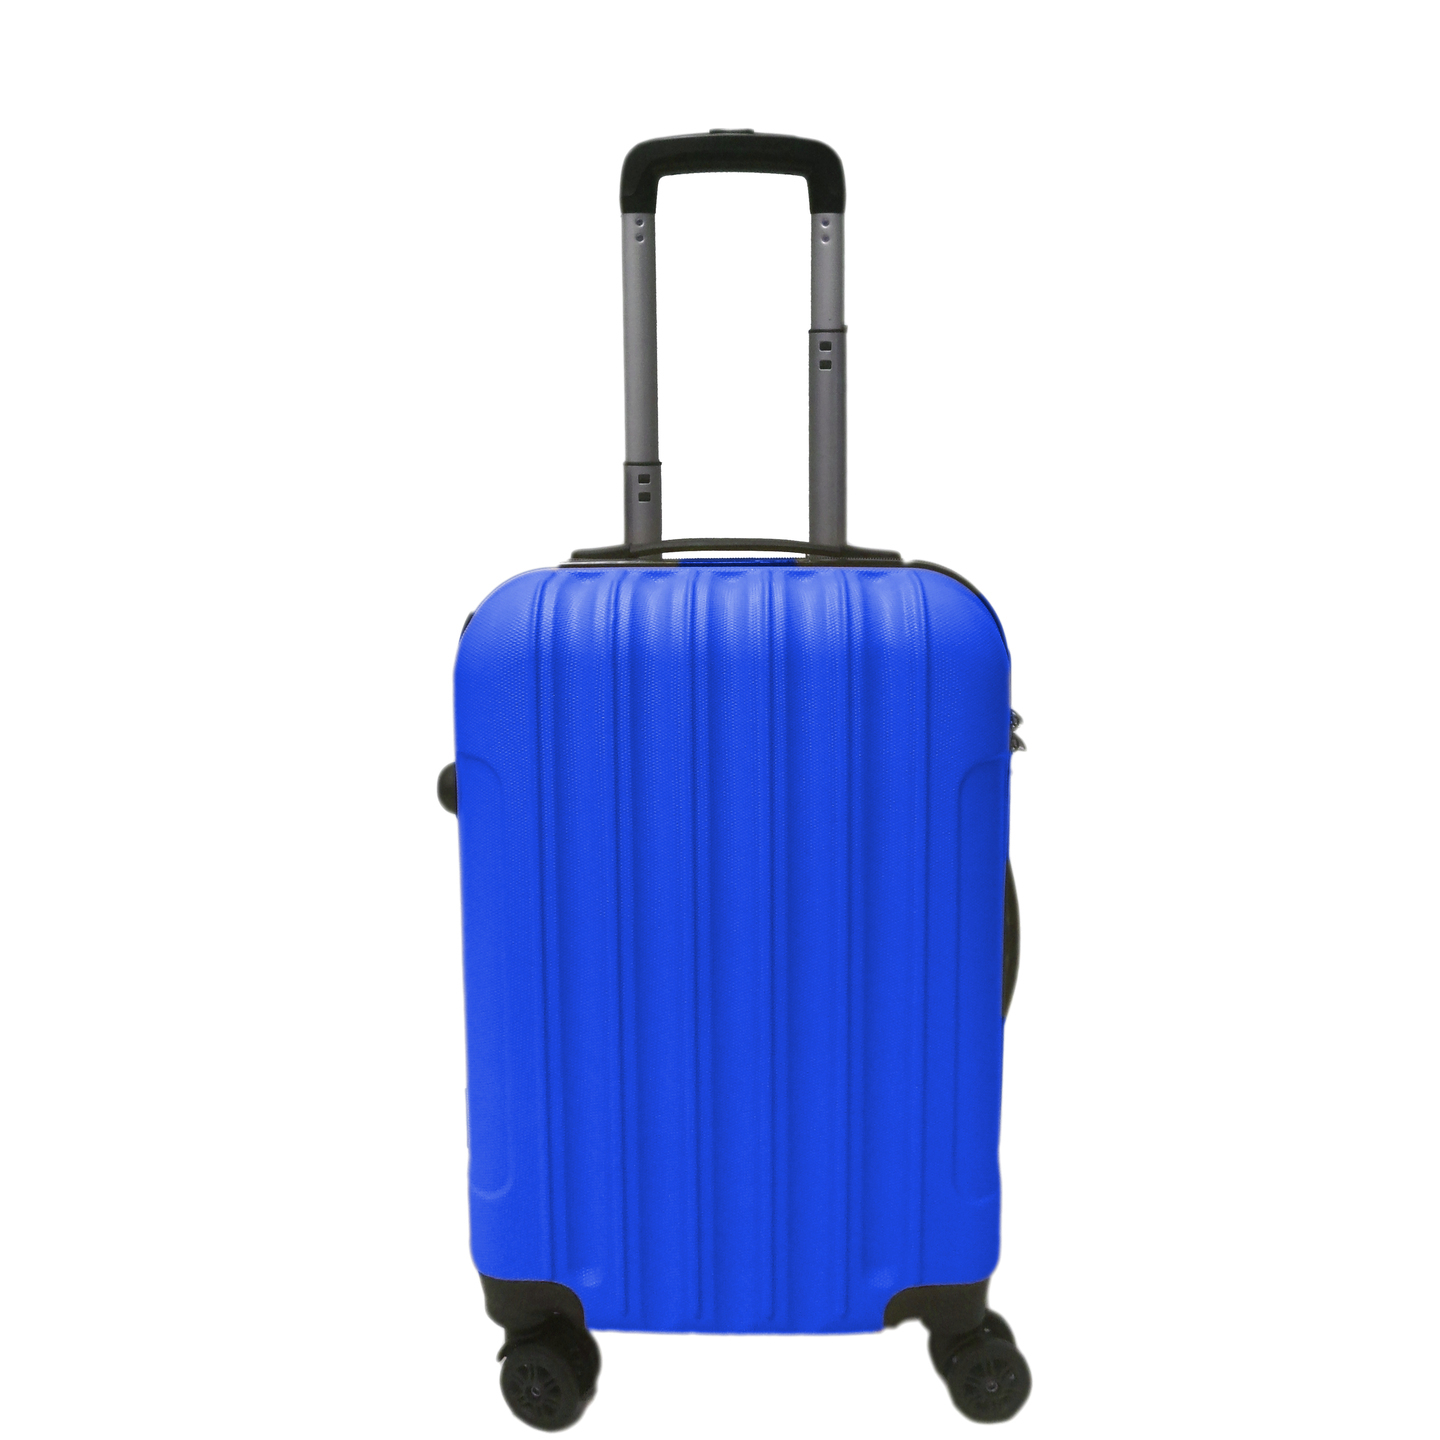 Elegant Hard Box Luggage - Blue